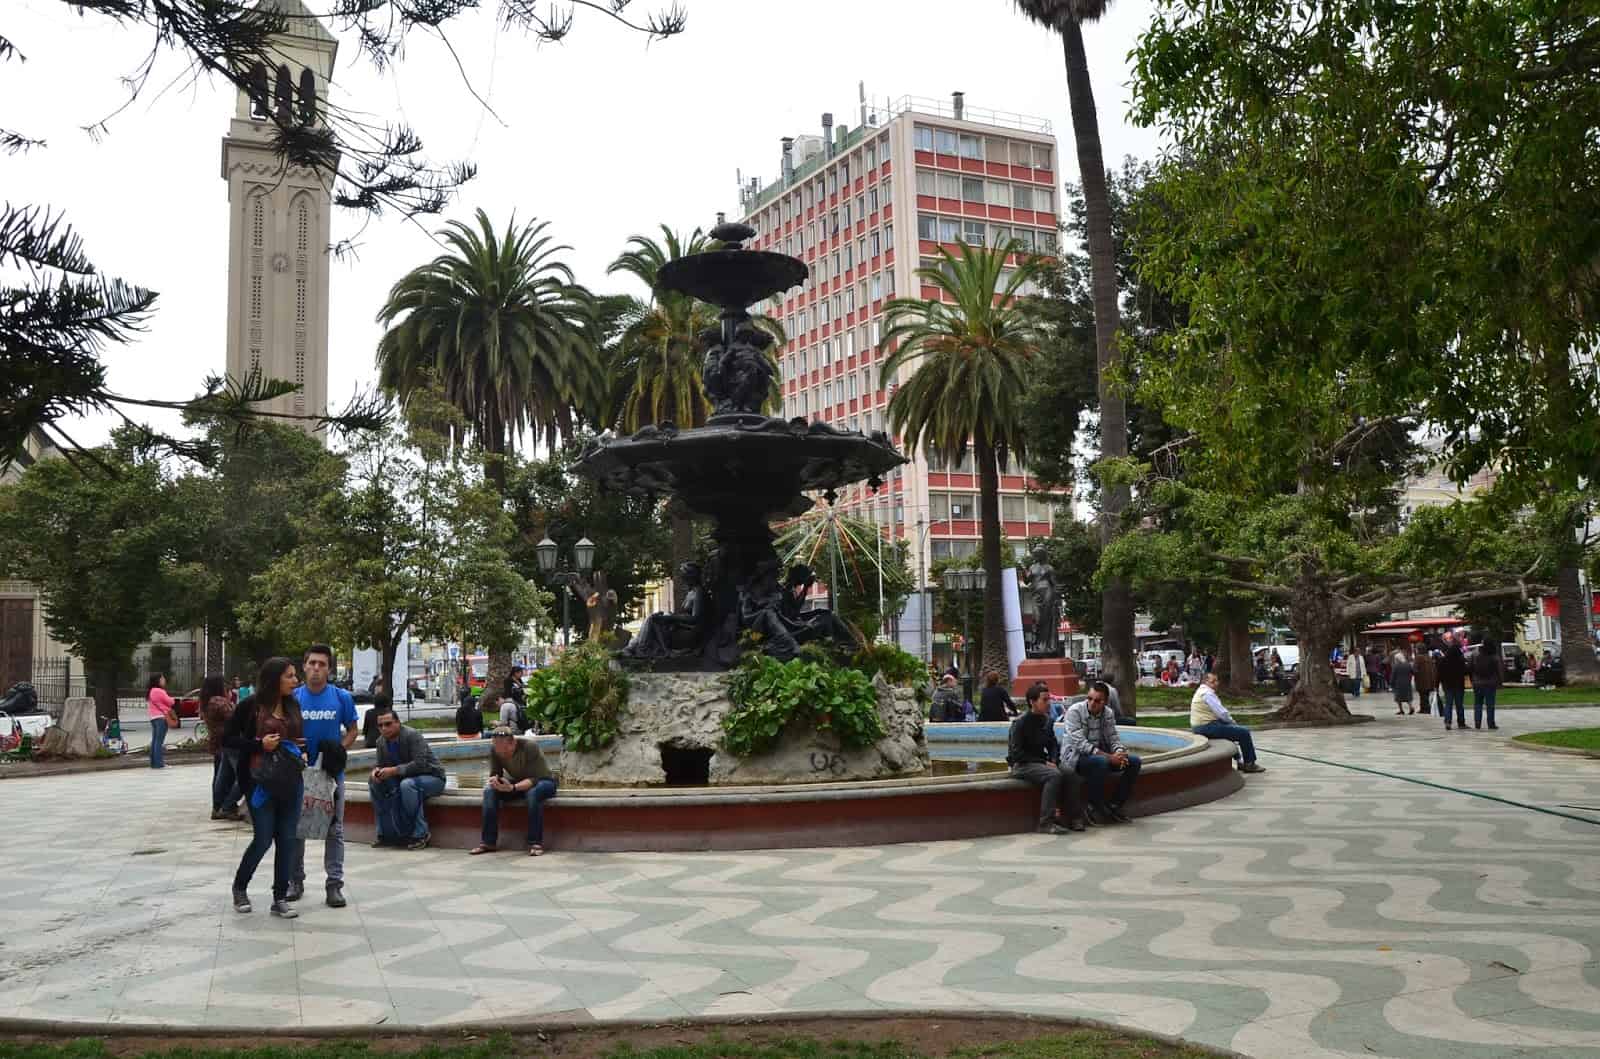 Plaza Victoria in Valparaíso, Chile